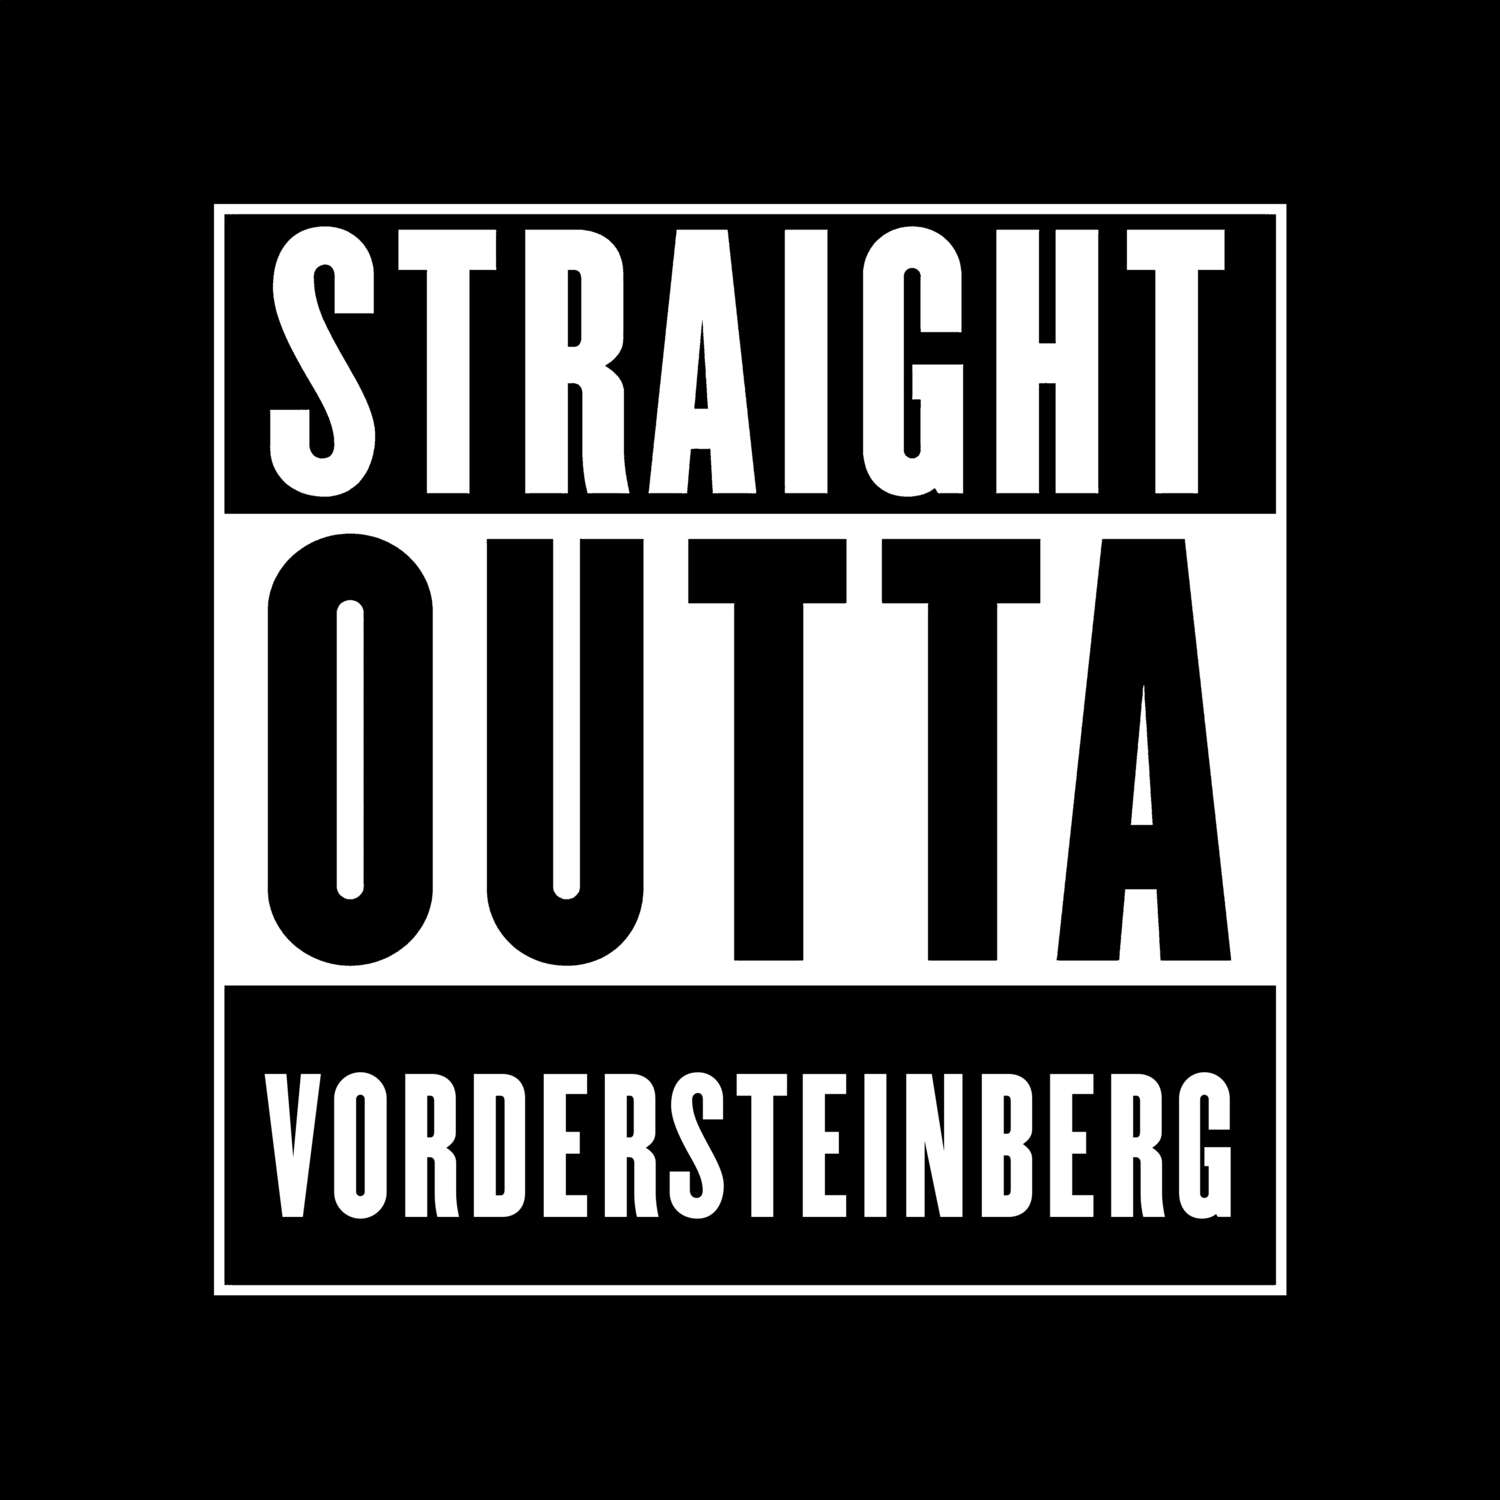 Vordersteinberg T-Shirt »Straight Outta«